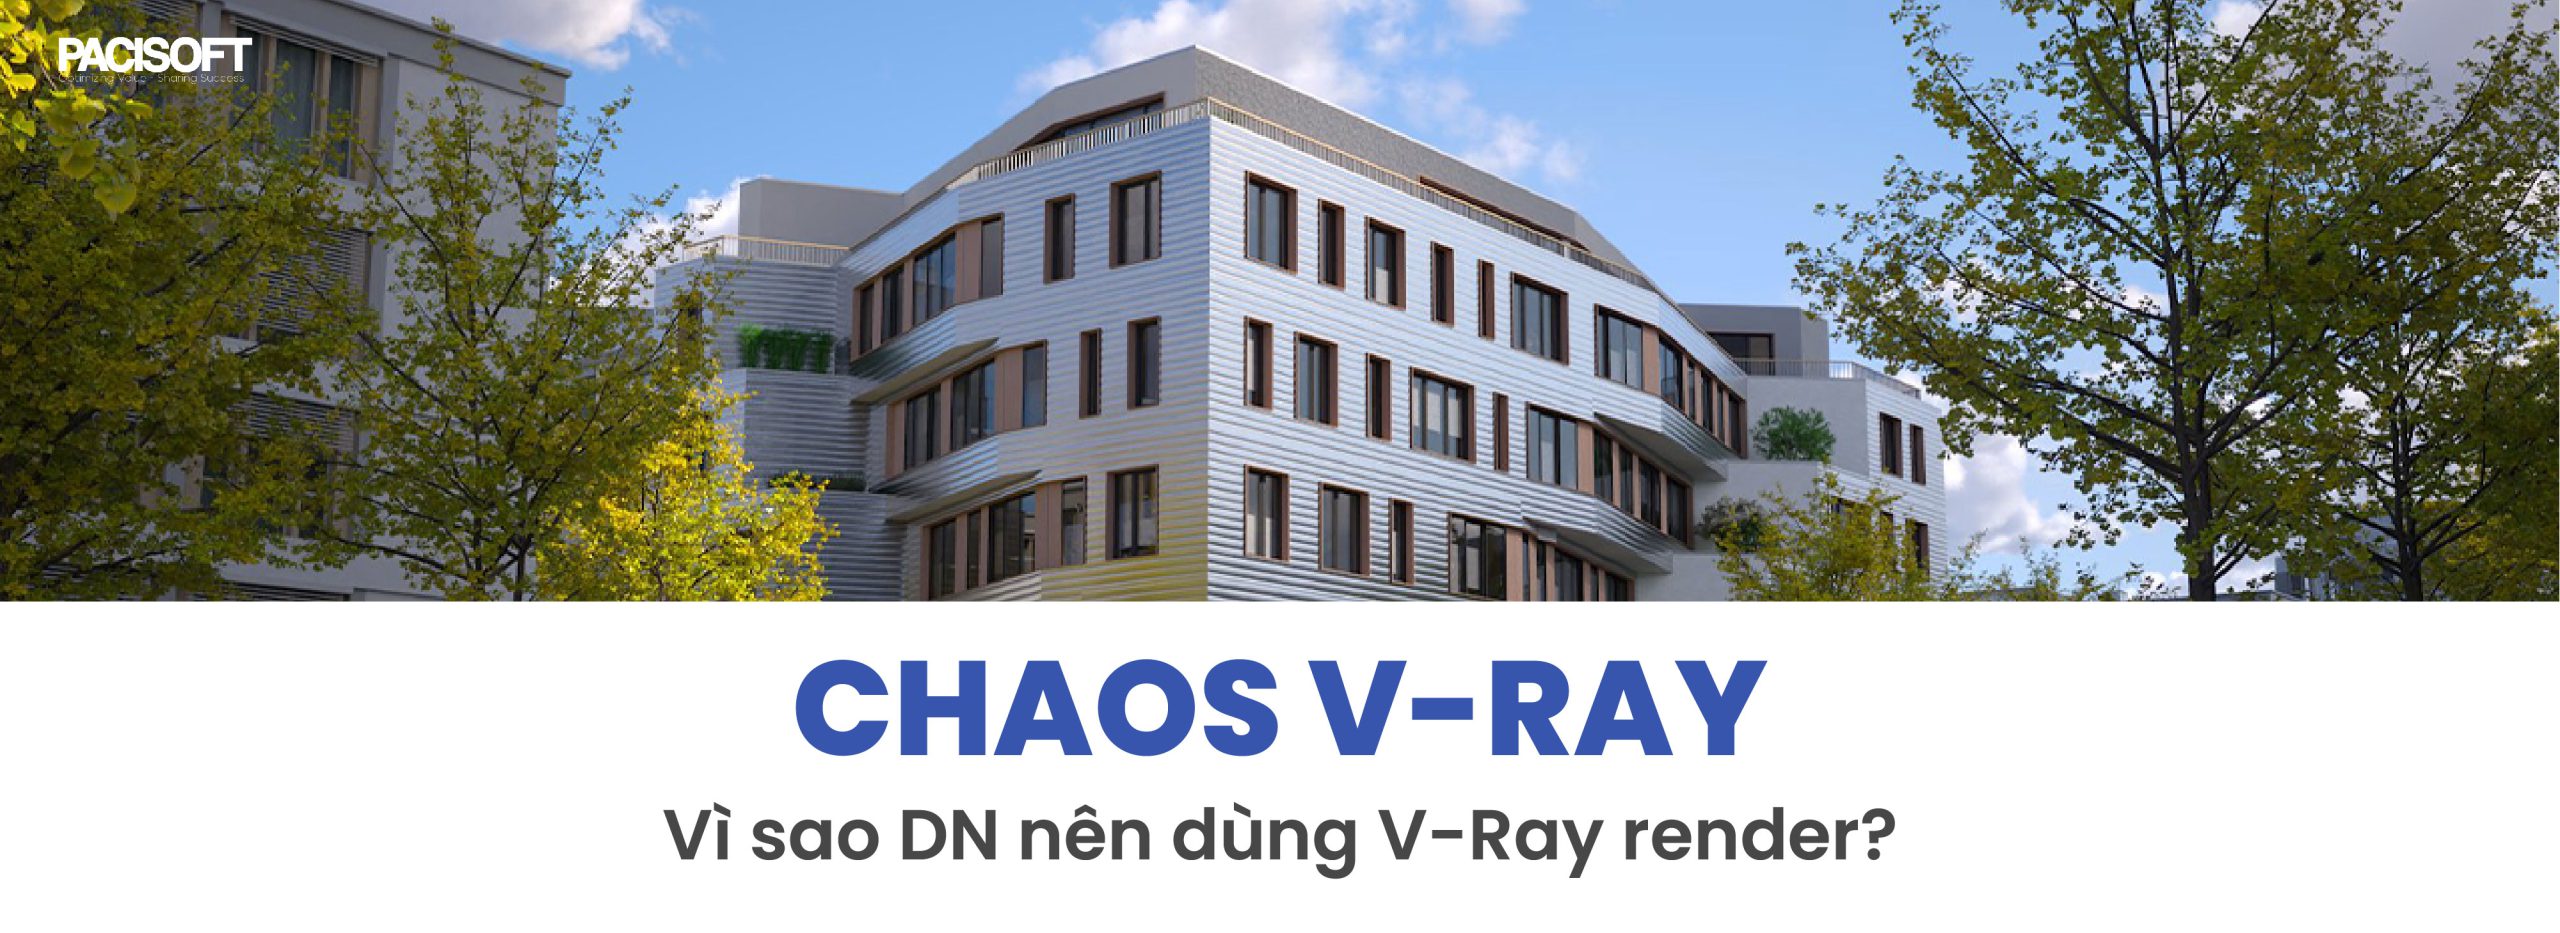 Chaos V-Ray la gi